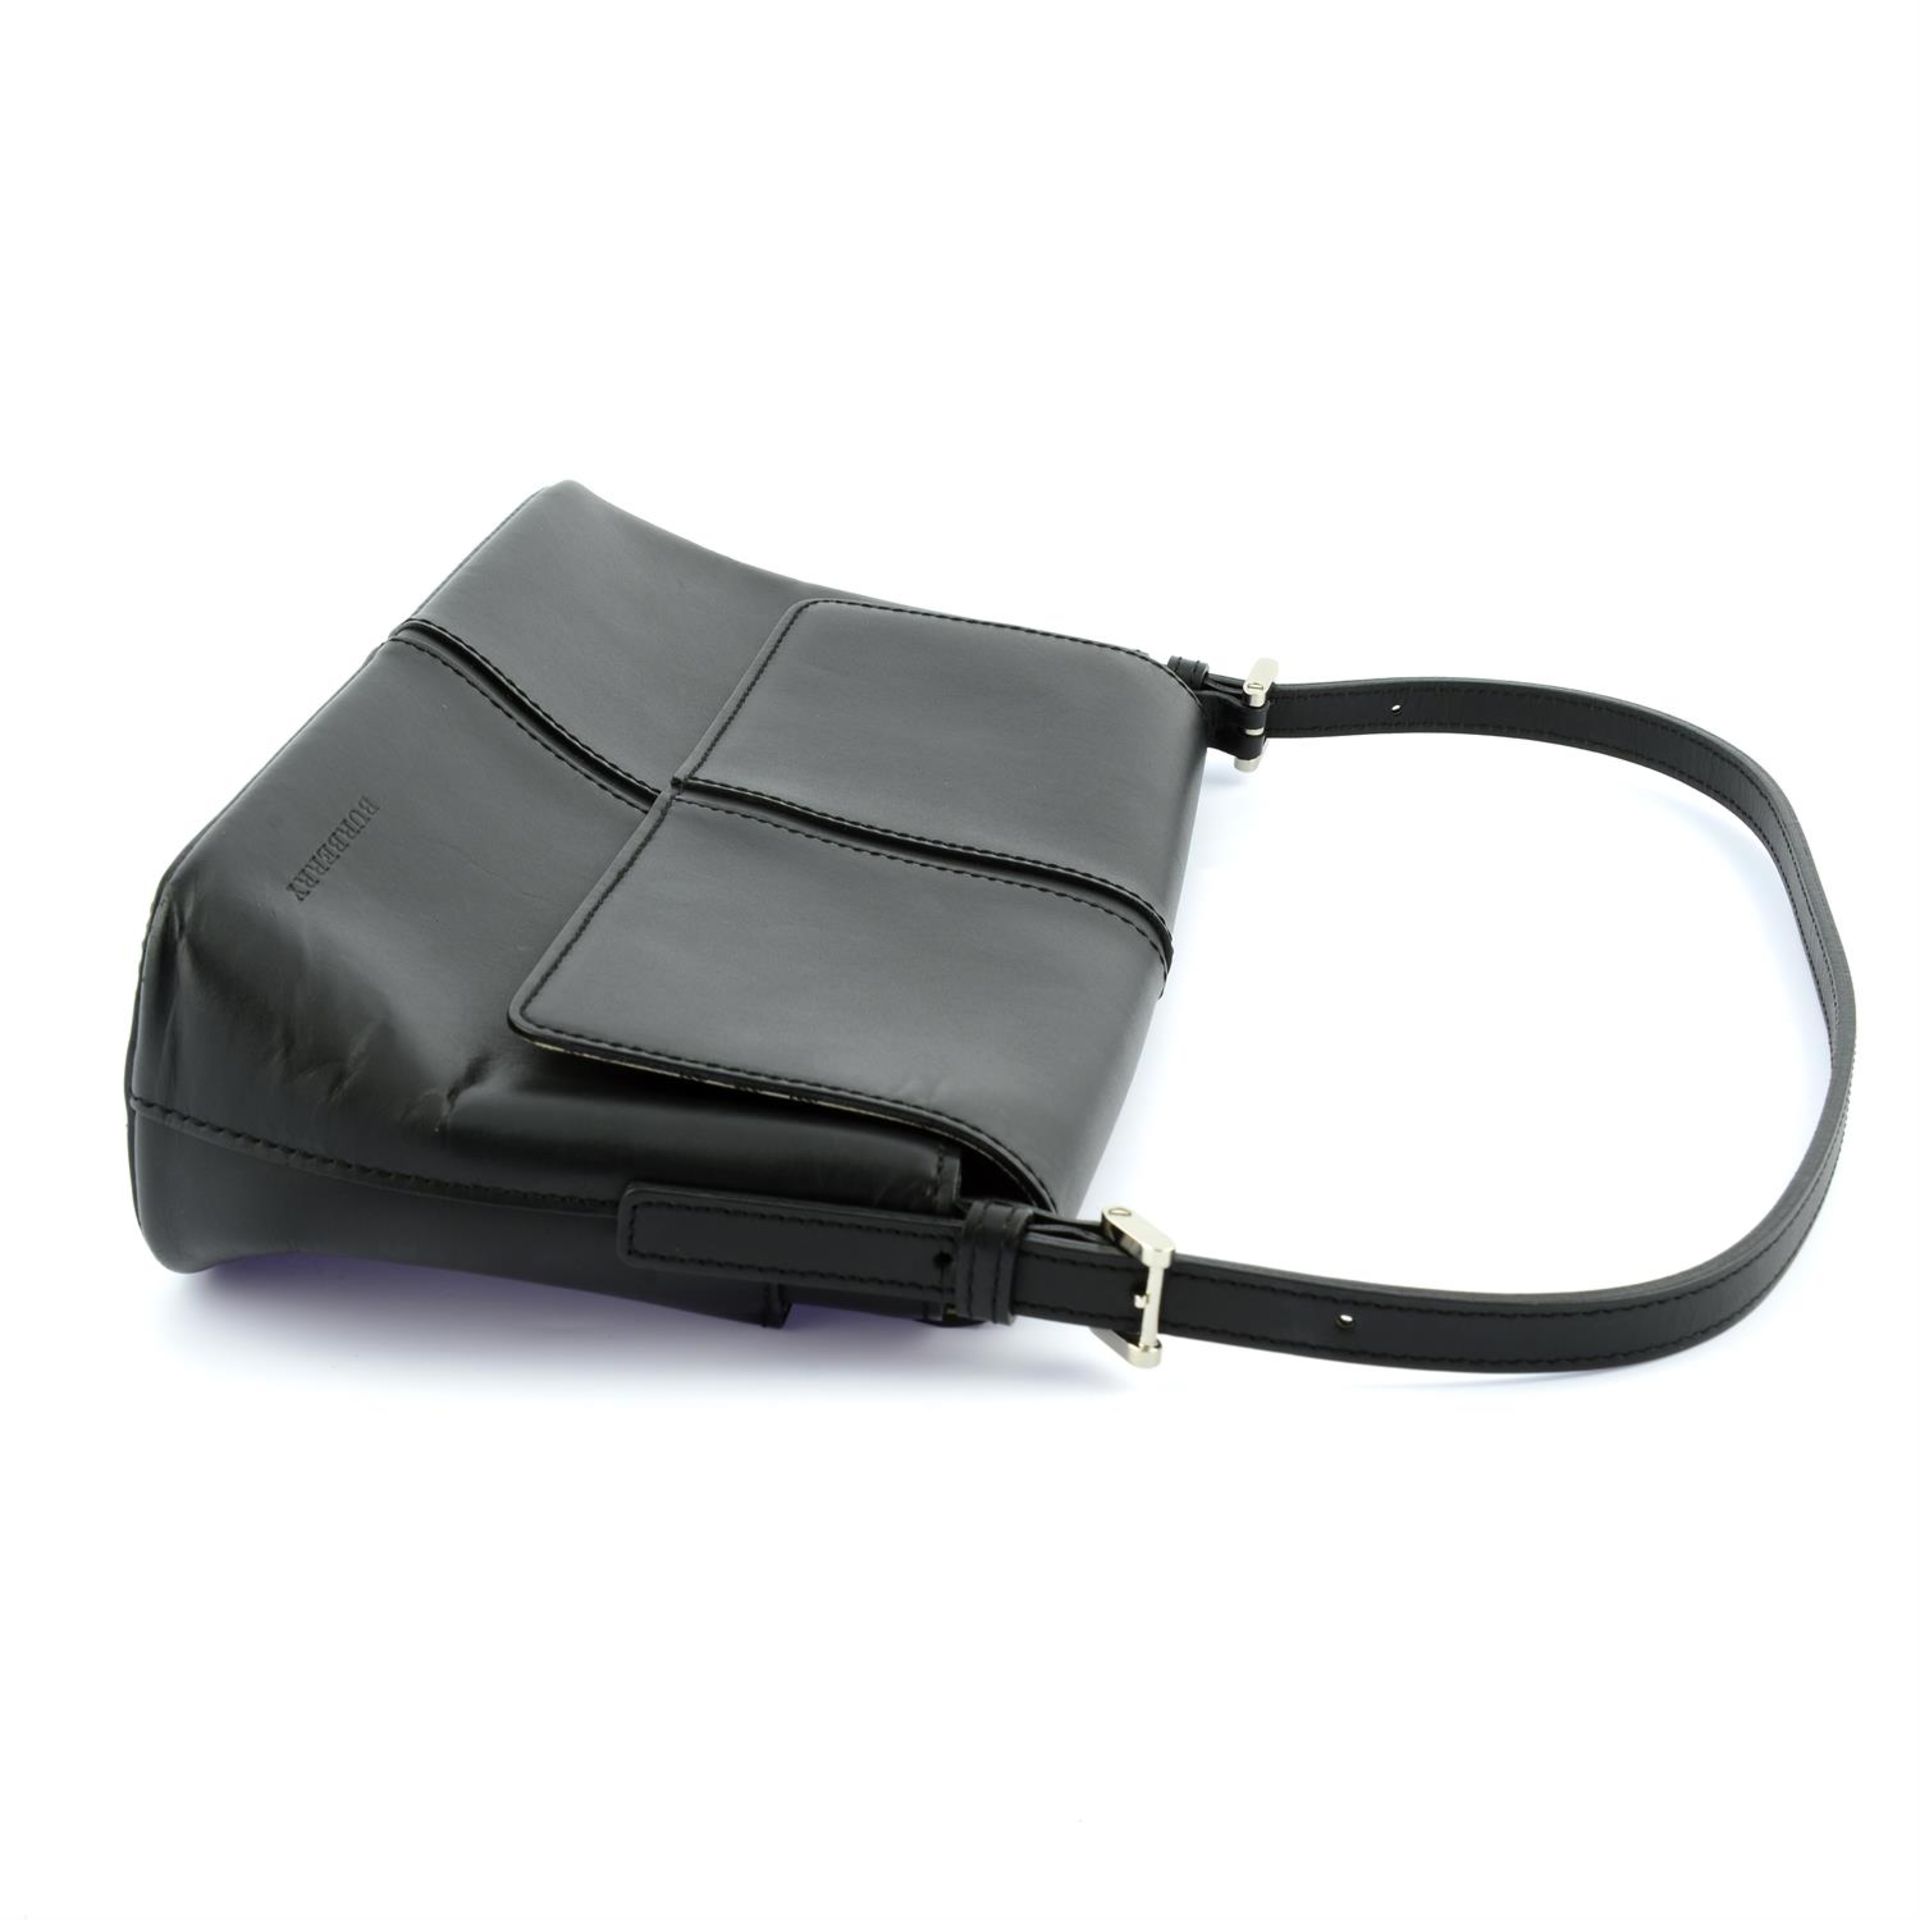 BURBERRY - a black leather rectangular shoulder flap bag. - Image 3 of 4